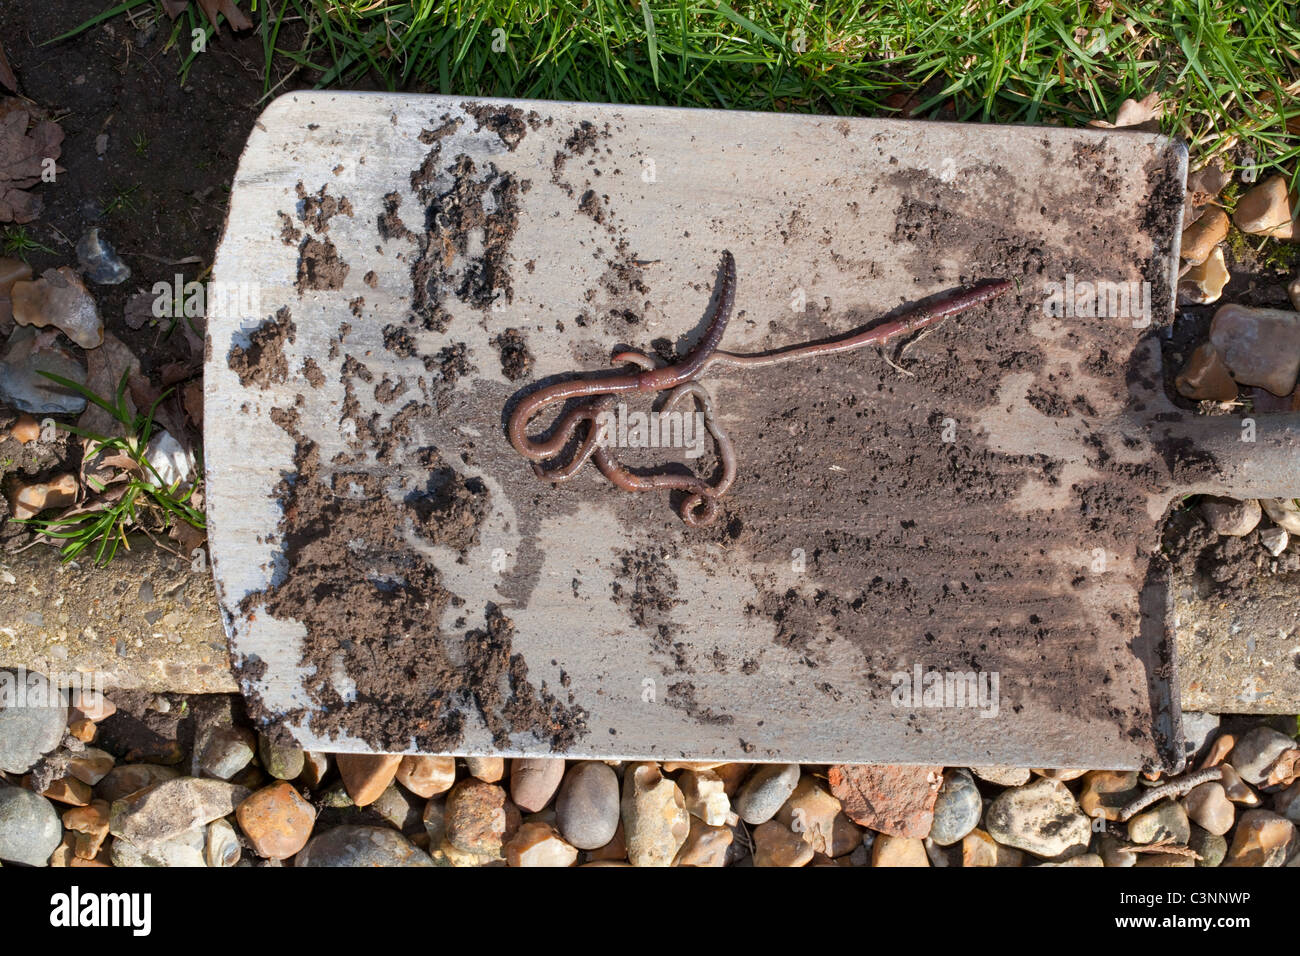 Earthworms (Lumbricus terrestris), on the blade of a gardener's spade. Stock Photo